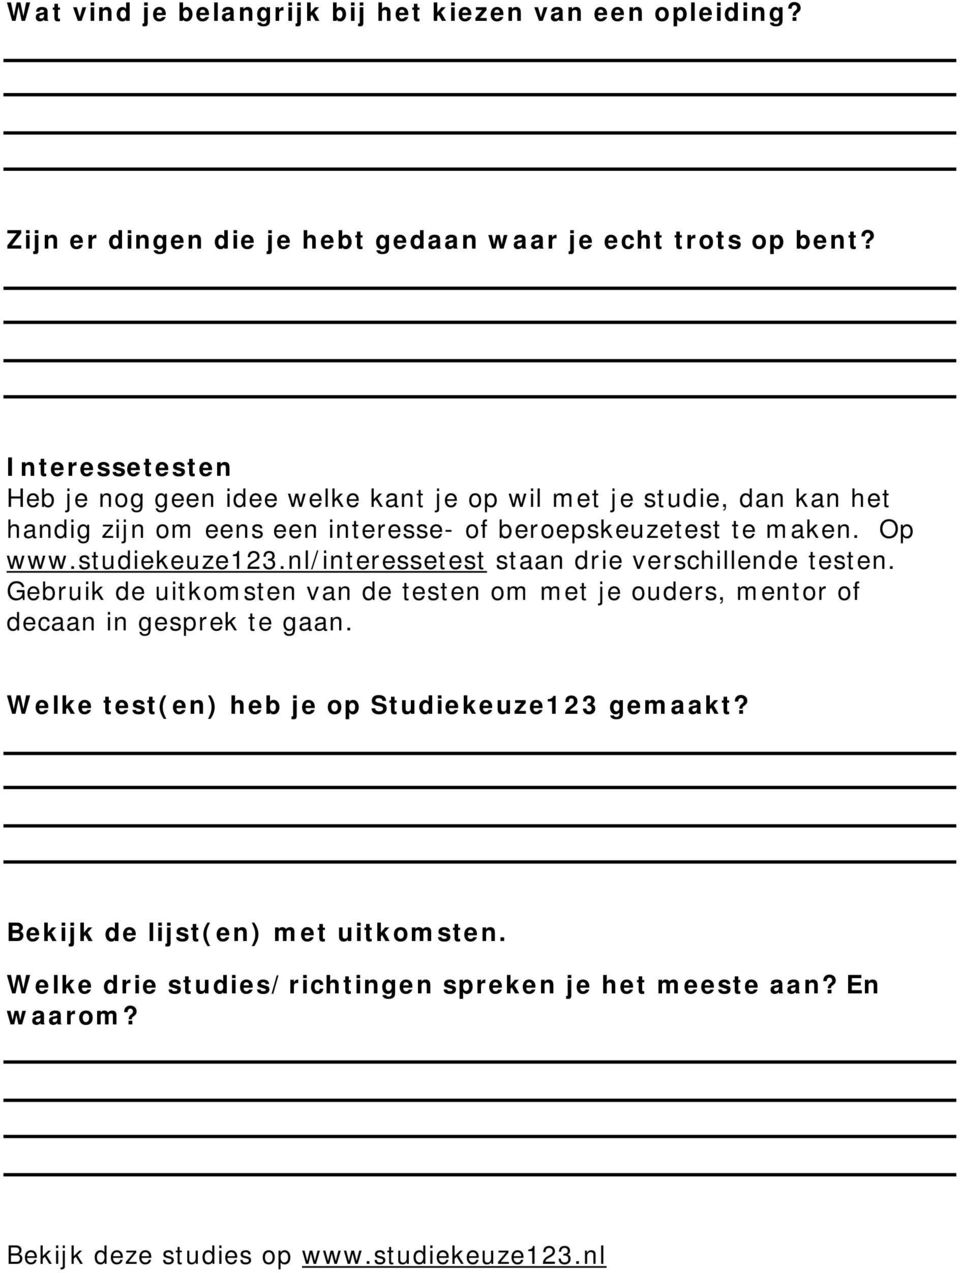 studiekeuze123.nl/interessetest staan drie verschillende testen. Gebruik de uitkomsten van de testen om met je ouders, mentor of decaan in gesprek te gaan.